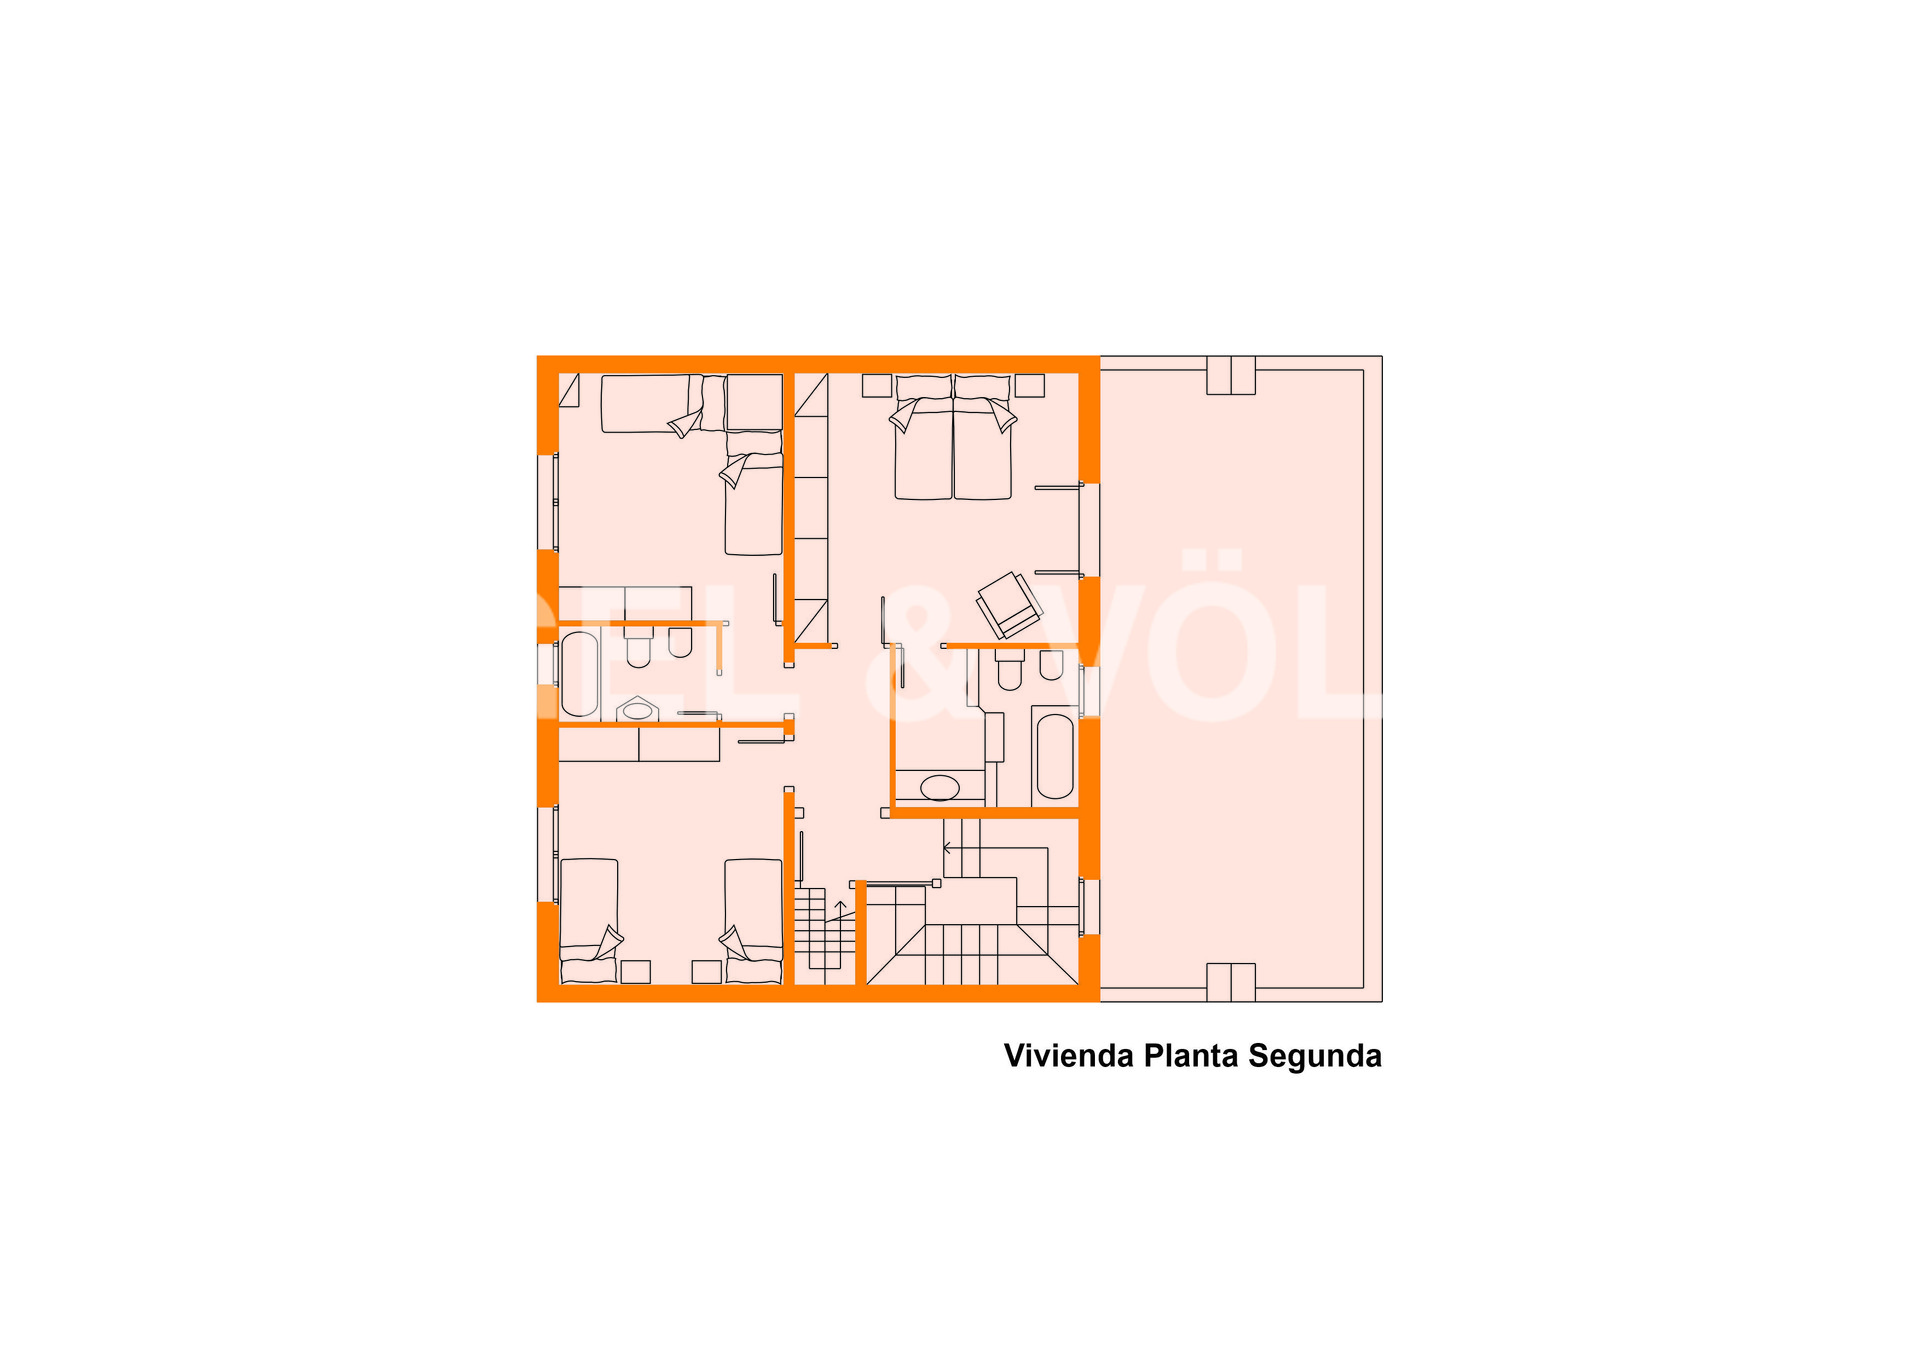 Inversión / Residencial inversión en Caldes de Montbui - 99 Vivienda P2.jpg